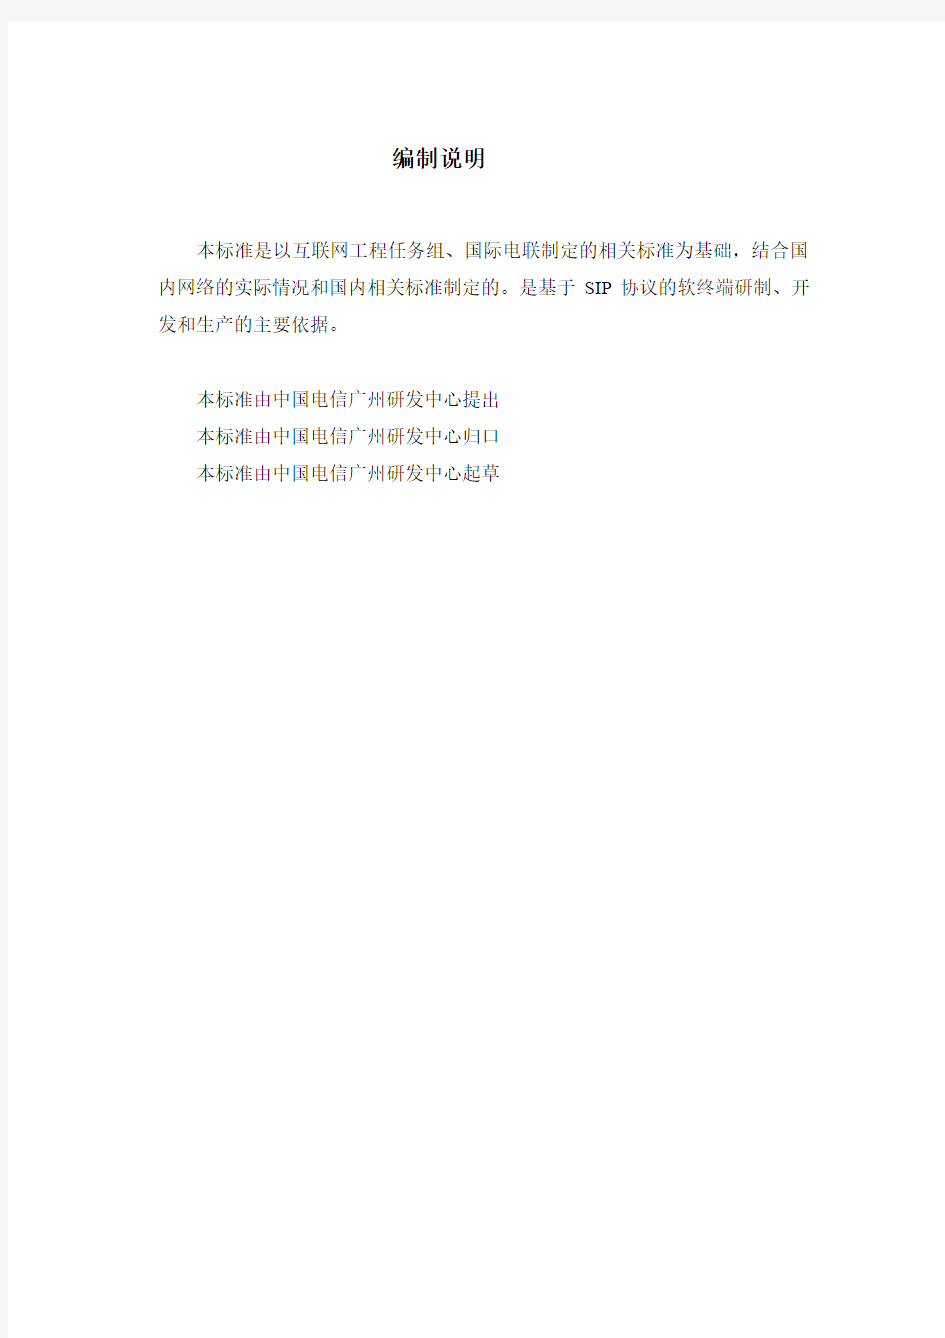 中国电信SIP软终端规范(正)_2